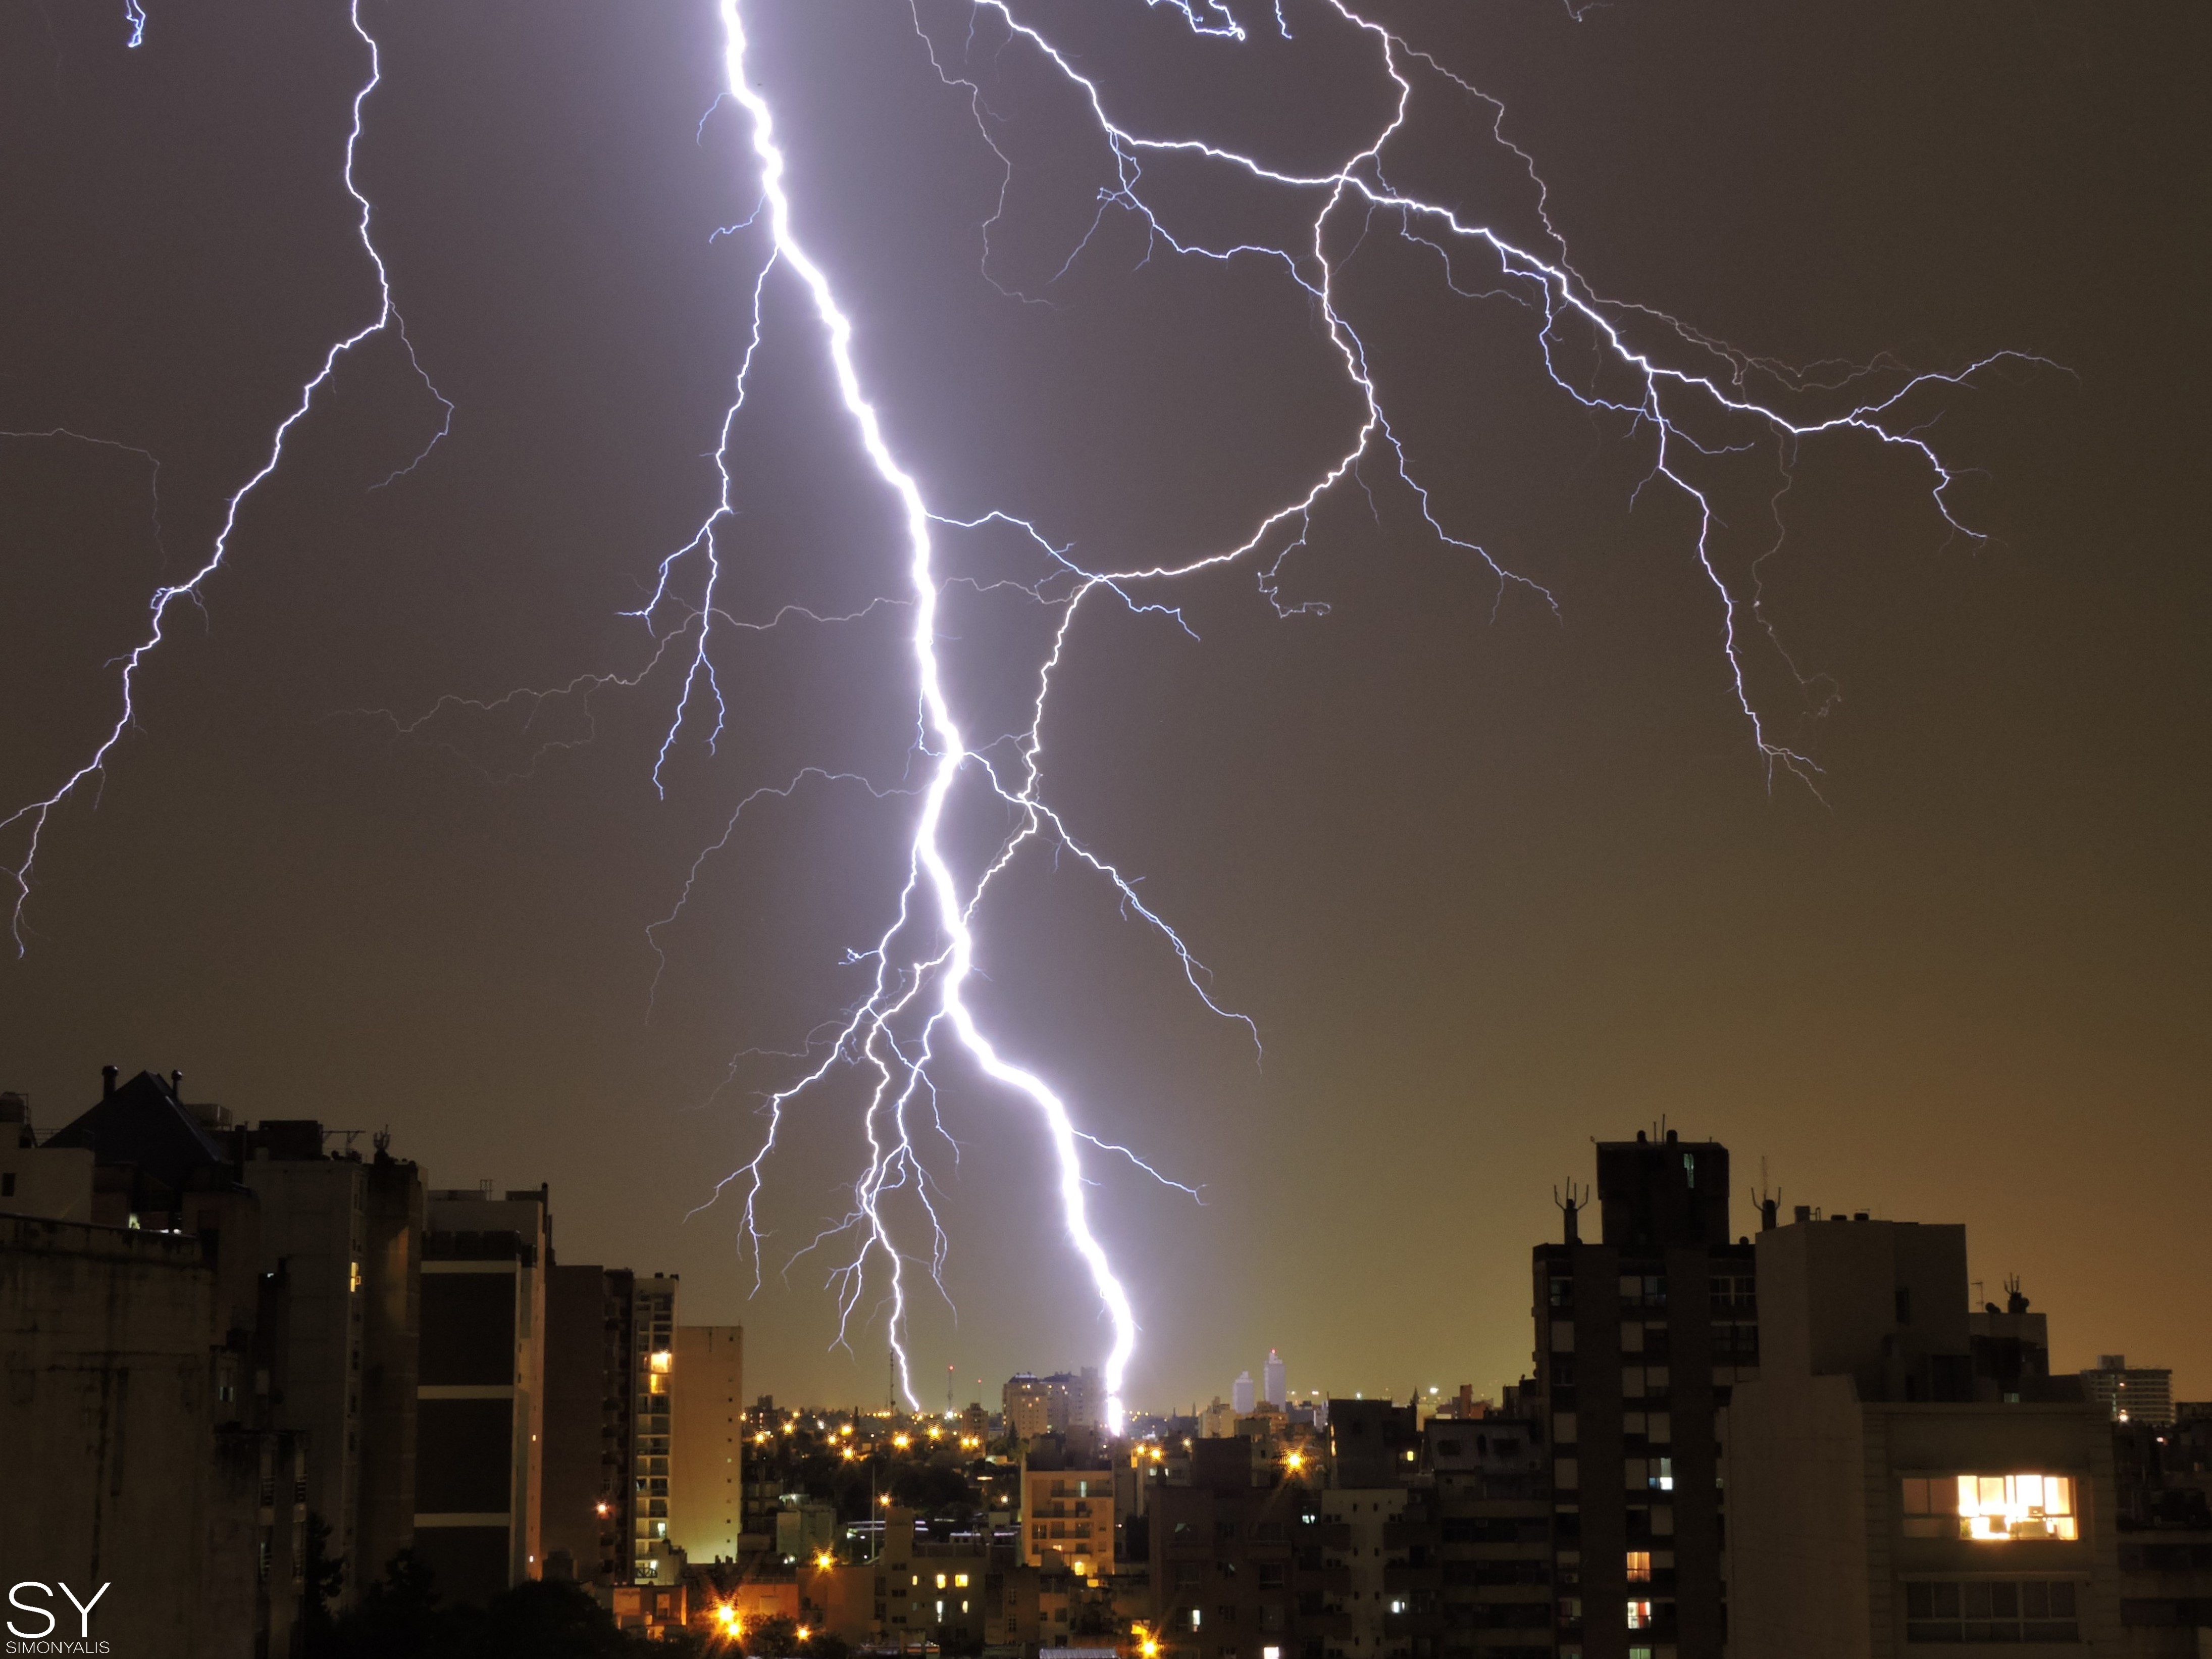 La actividad eléctrica de una tormenta en Córdoba (@simonyalisph)